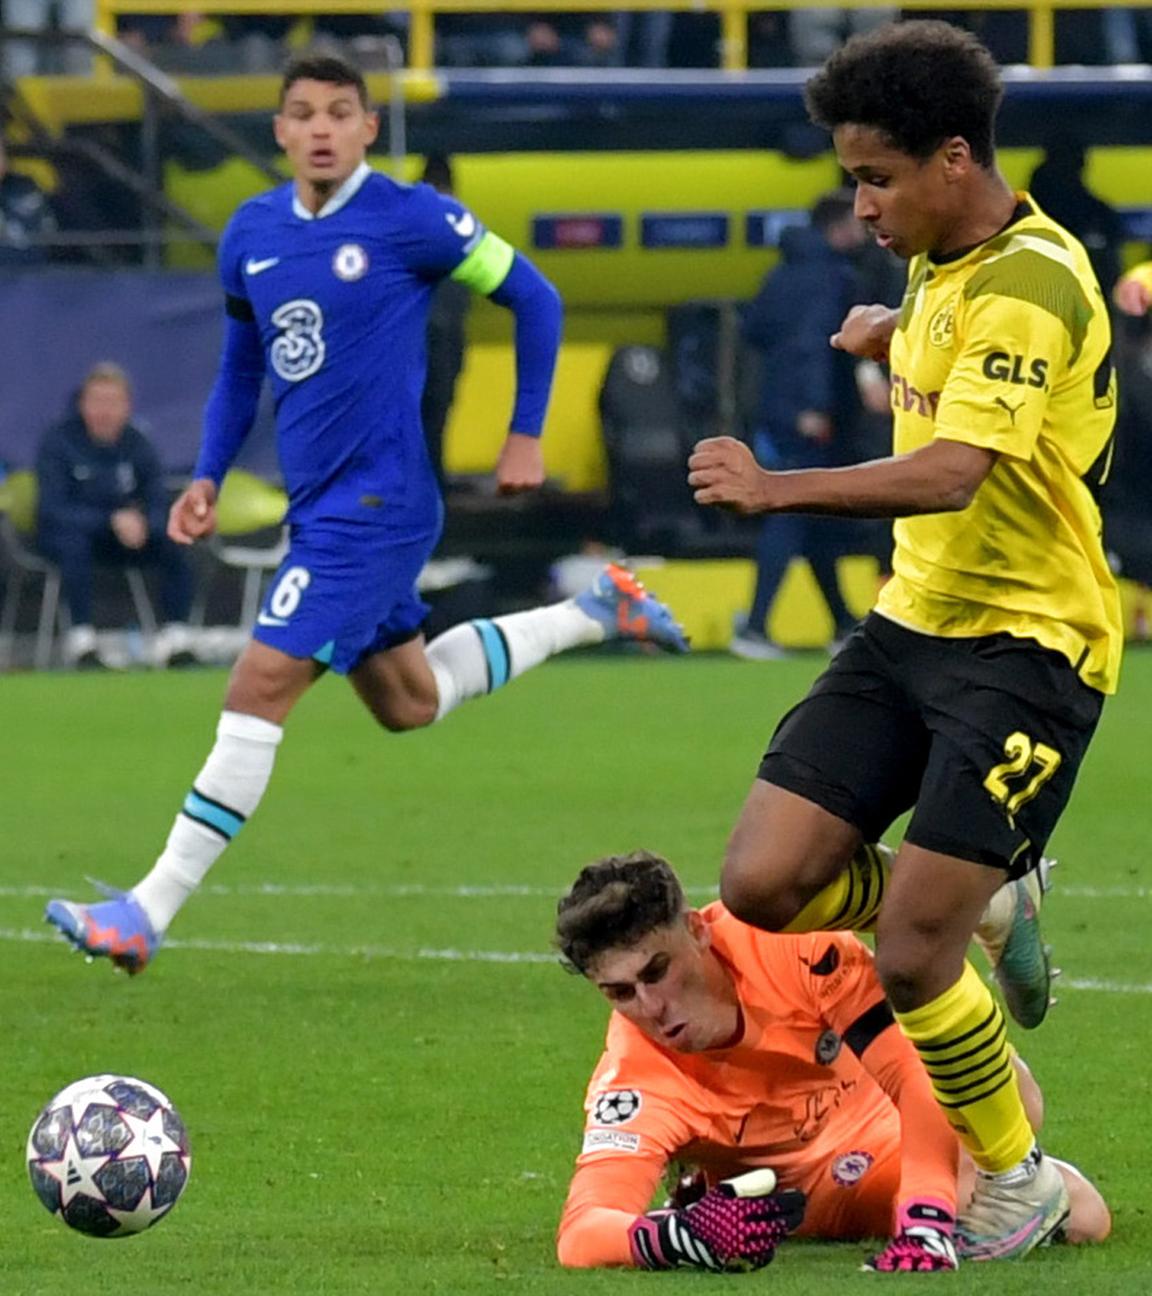 Dortmunds Karim Adeyemi (M) geht an Chelseas Torwart Kepa Arrizabalaga vorbei und trifft zum 1:0.